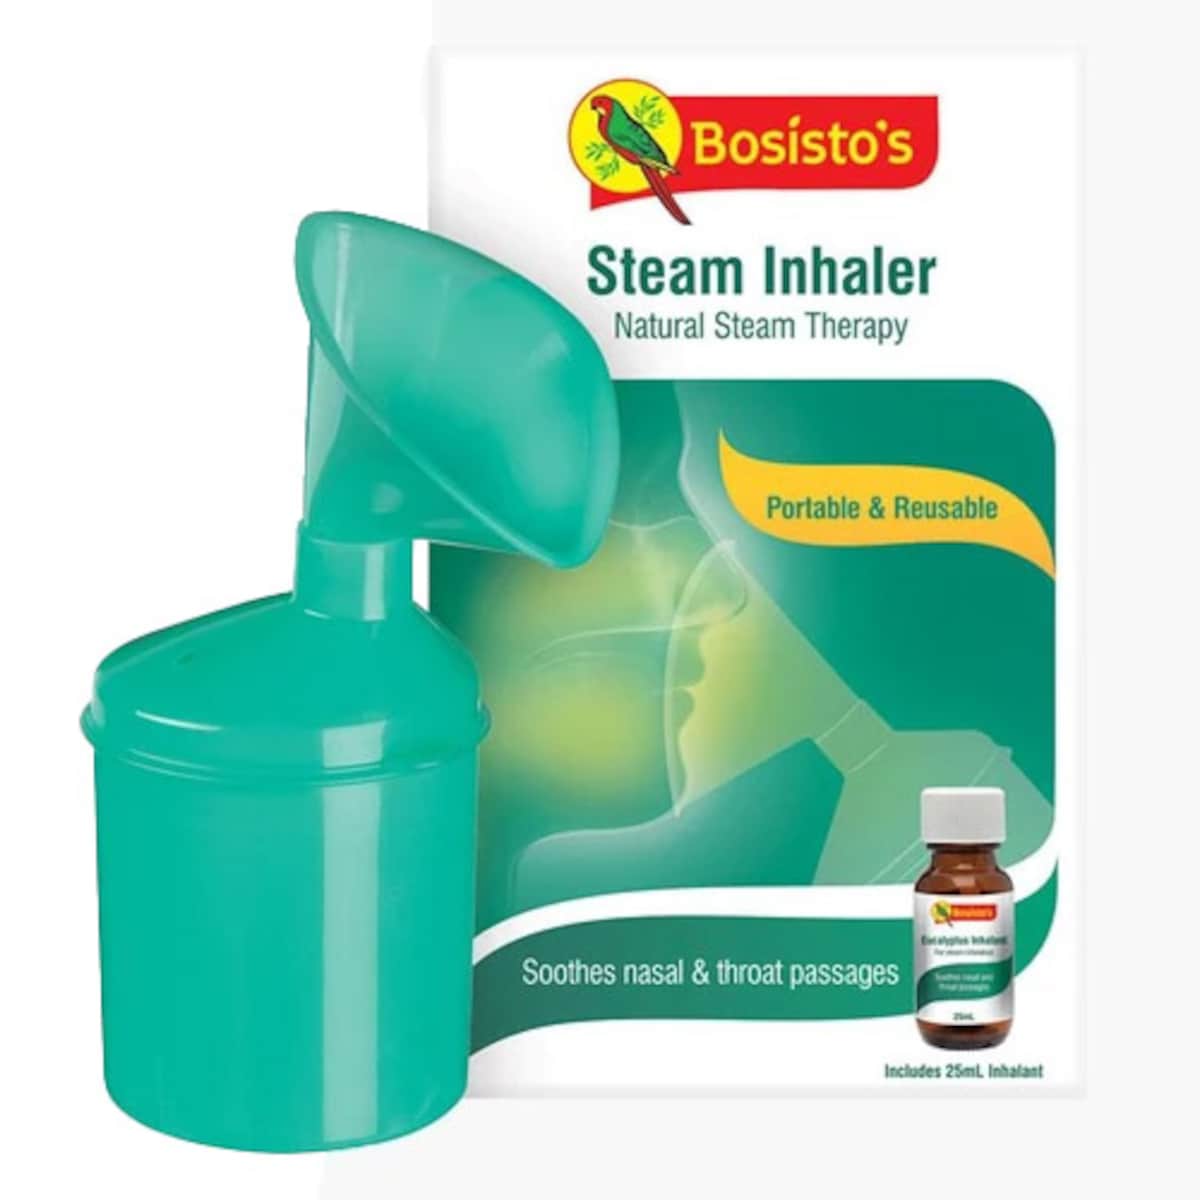 Bosistos Steam Inhaler 1 Pack